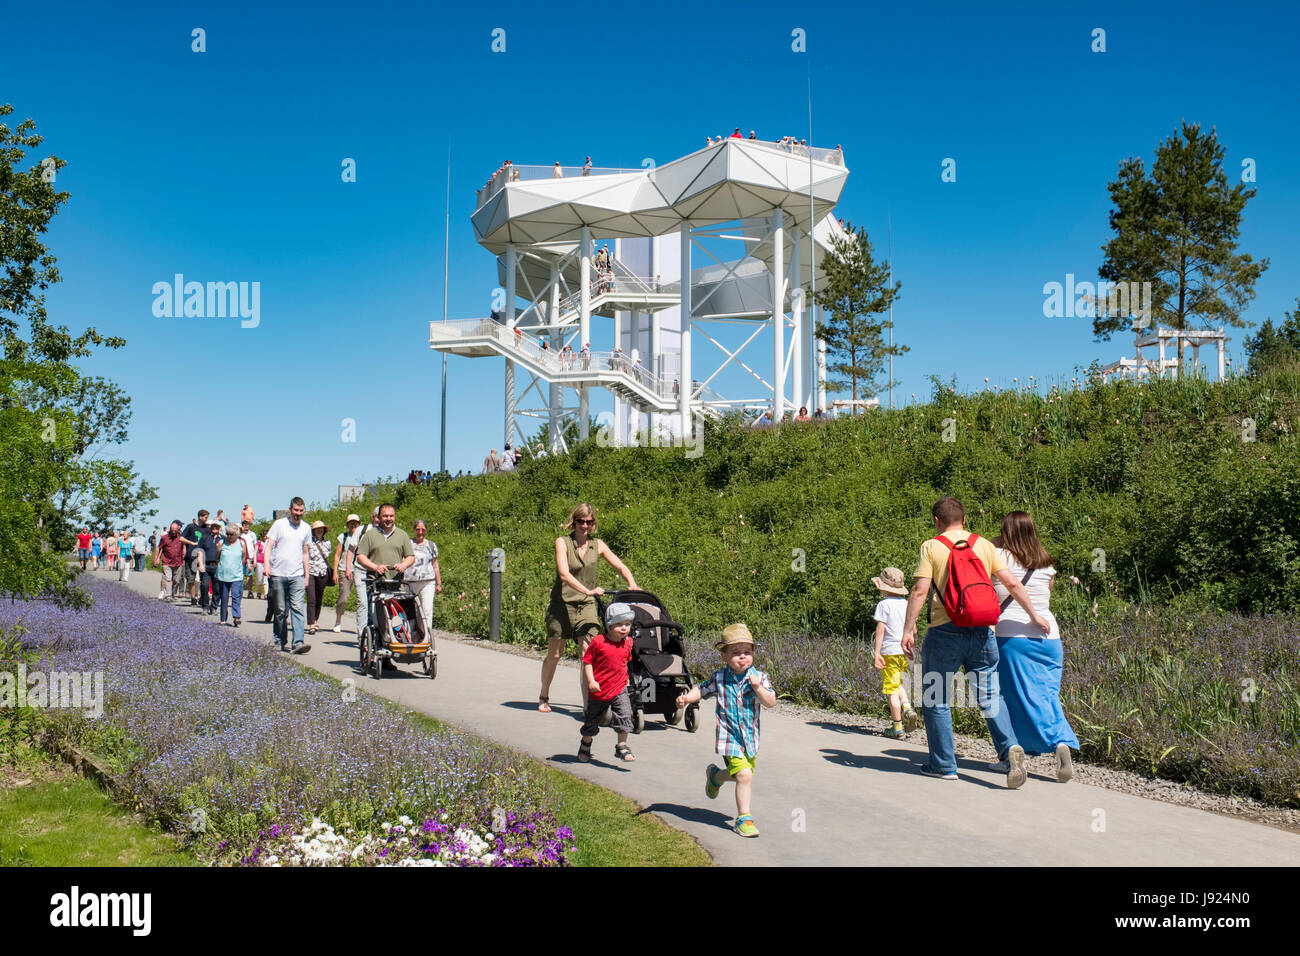 Wolkenhain Aussichtsplattform am IGA 2017 internationales Gartenfestival (internationale Garten Ausstellung) in Berlin, Deutschland Stockfoto